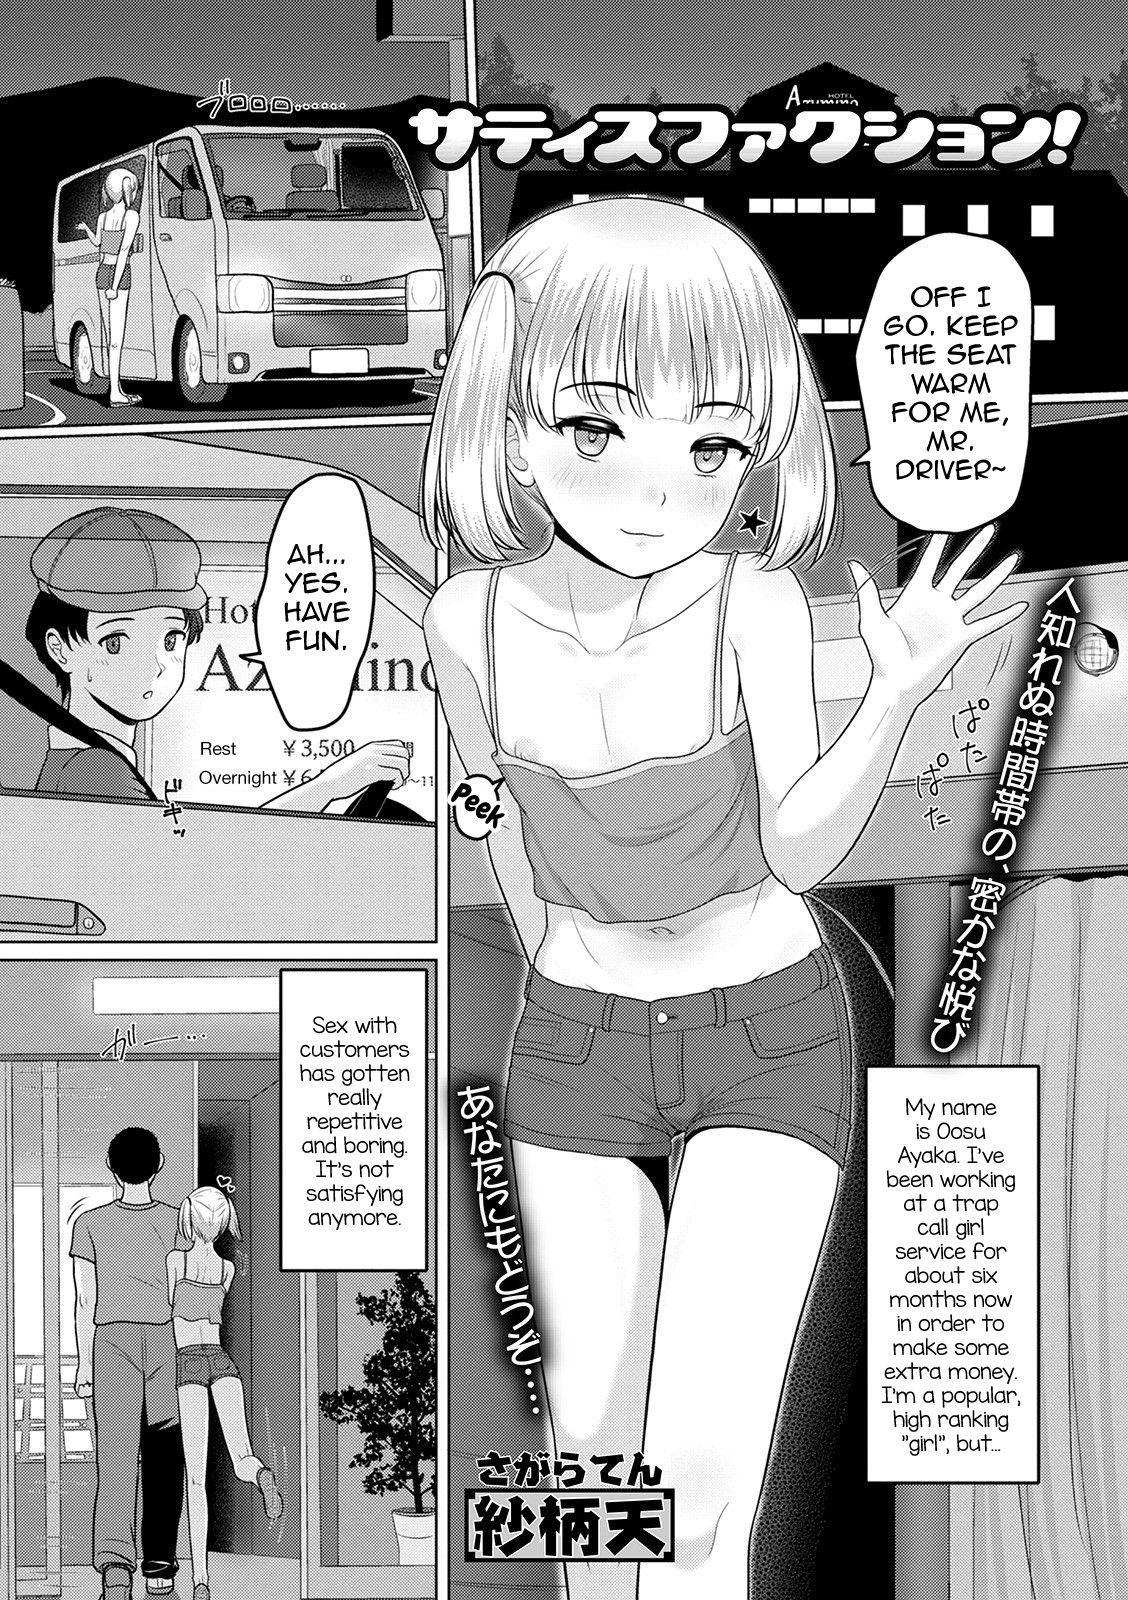 anime trap porn blowjob